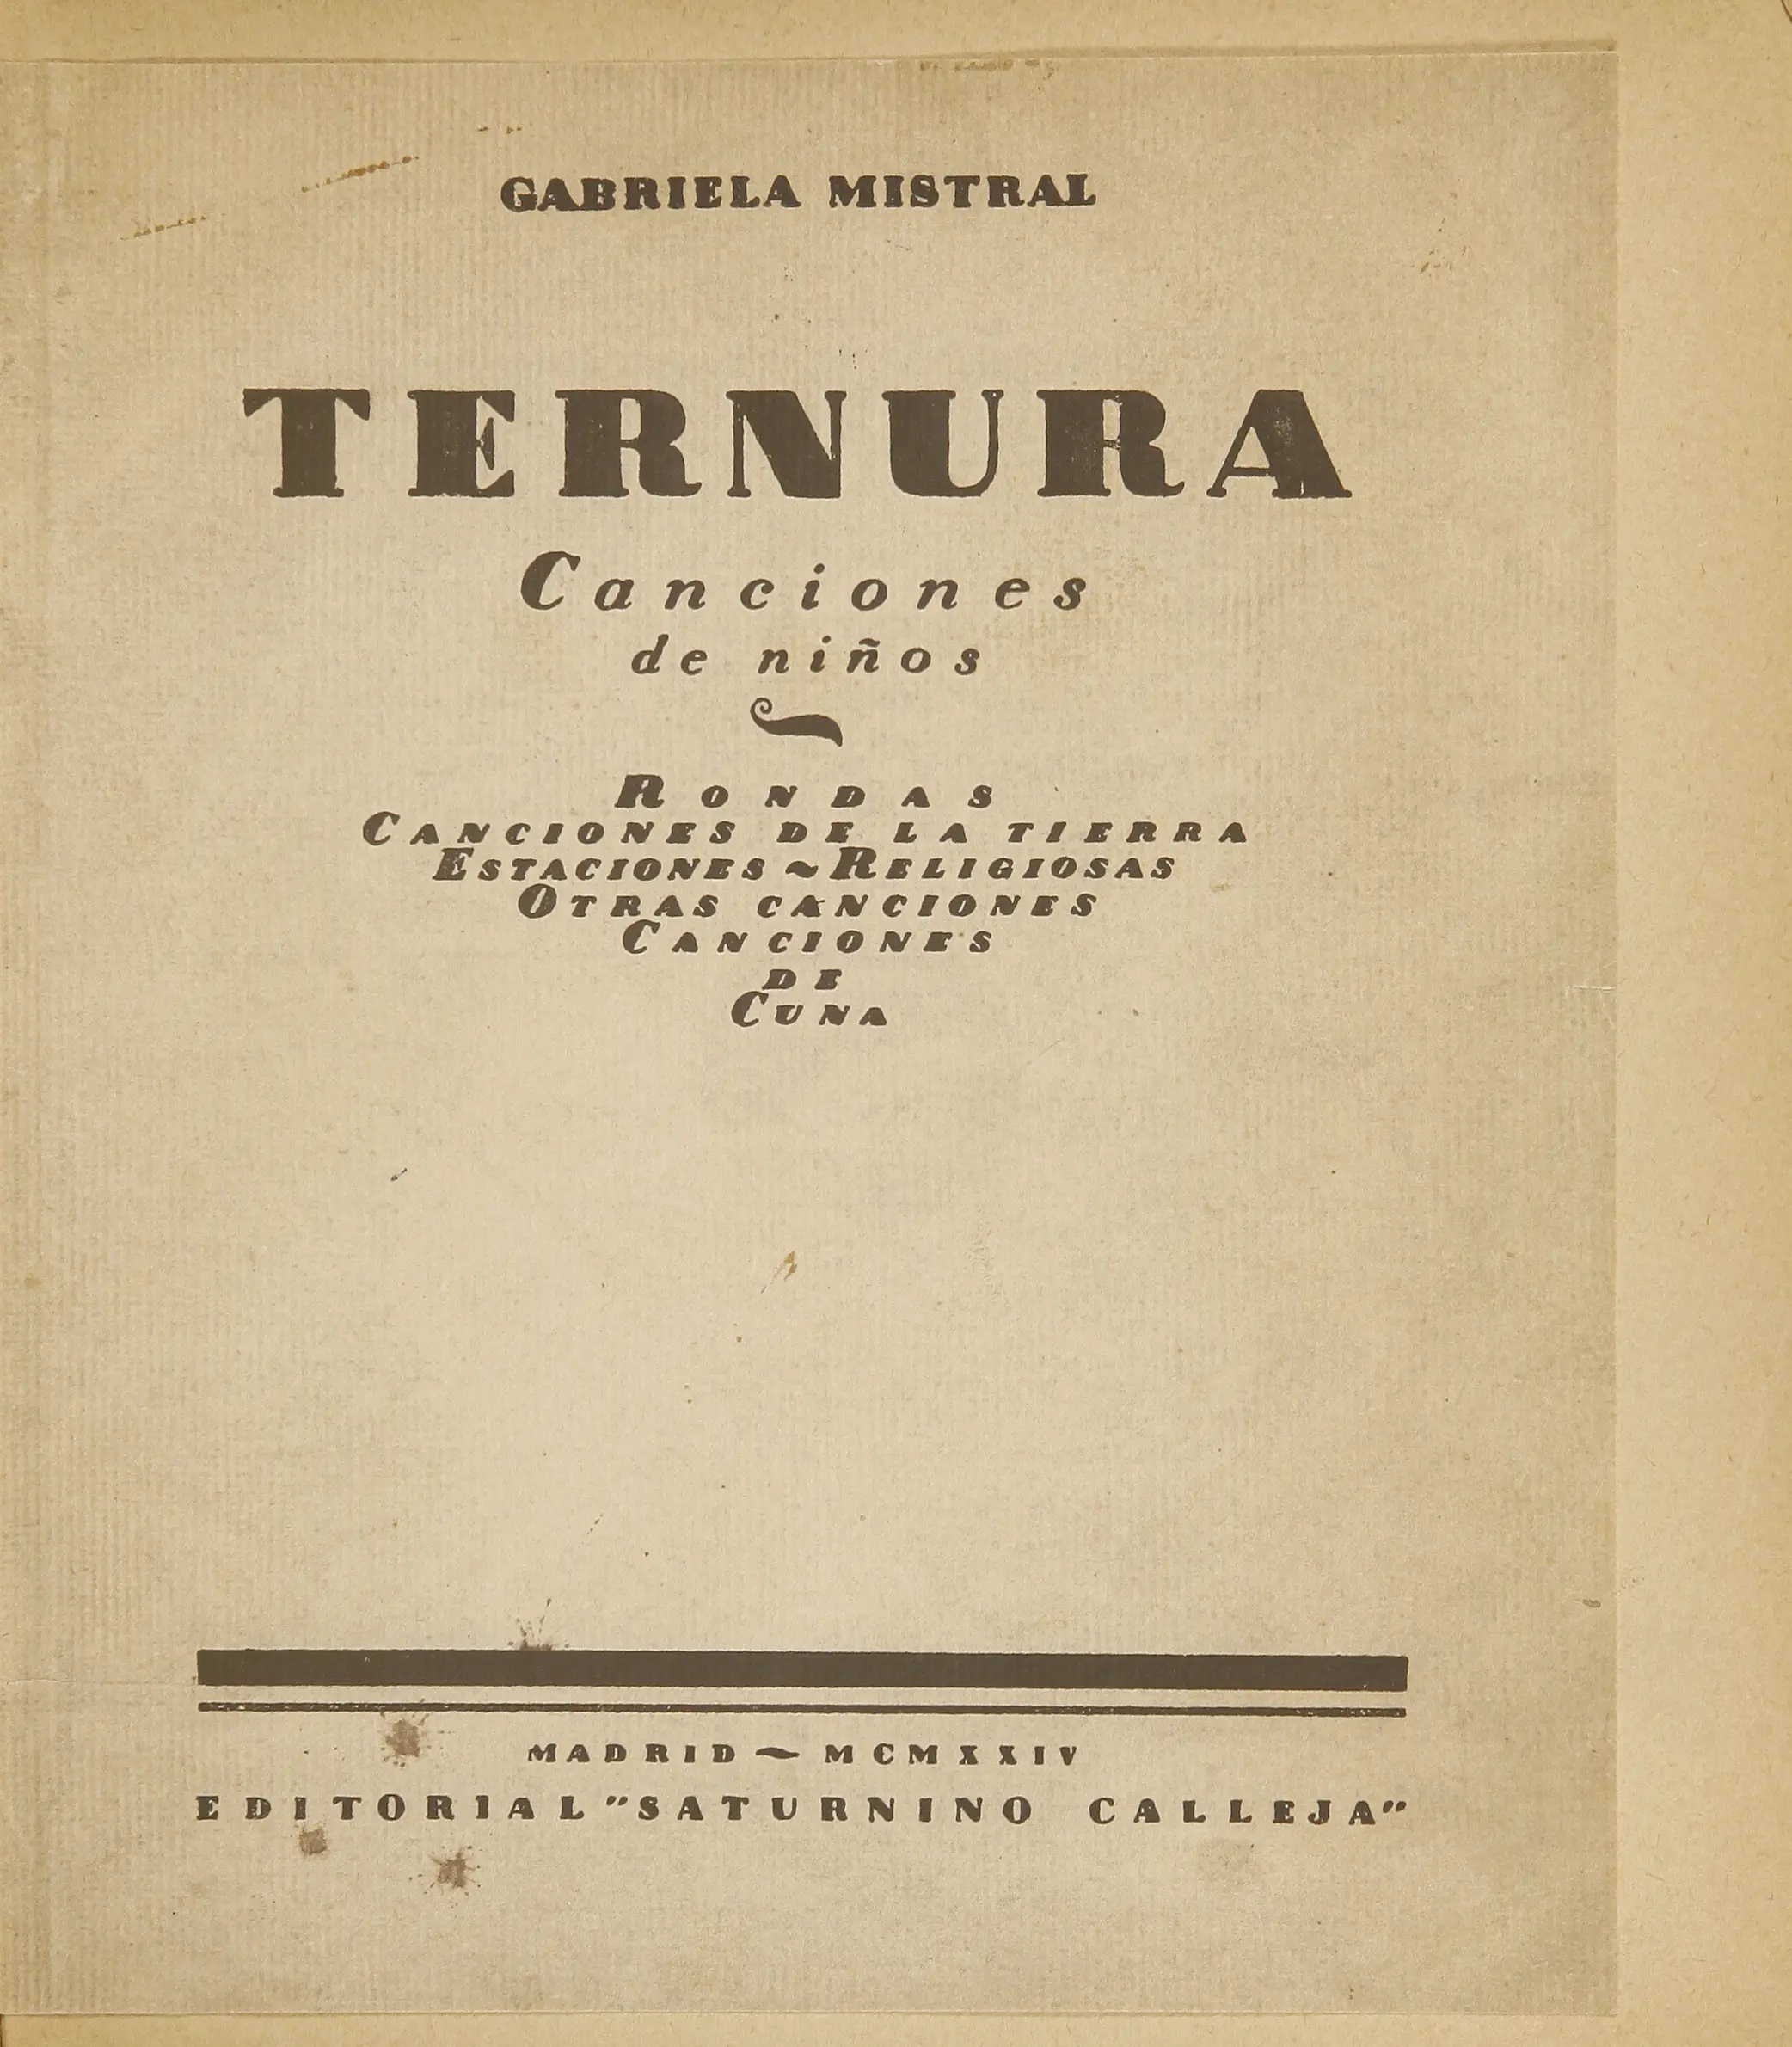 principales obras de gabriela mistral - Cuál fue el libro más importante de Gabriela Mistral